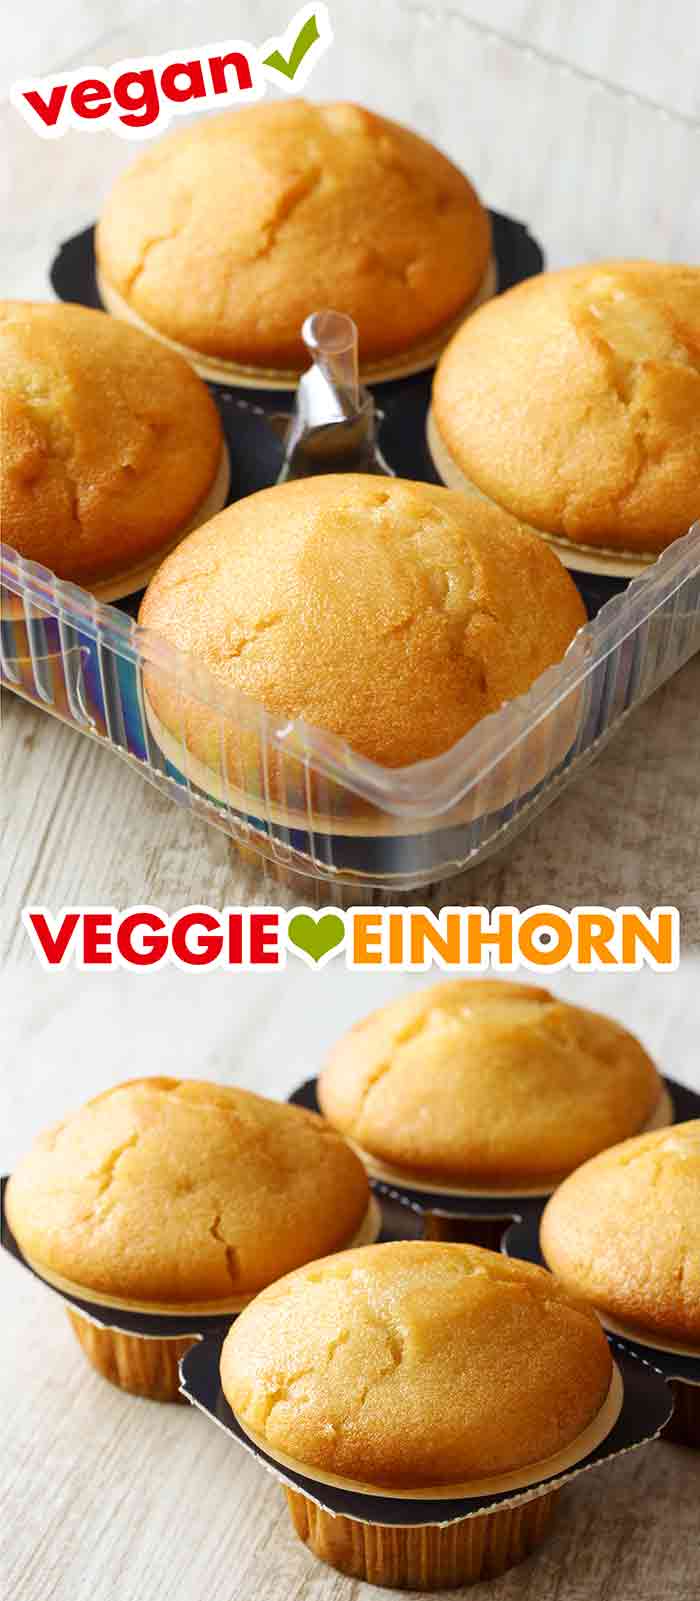 Verpackung der veganen Vanille Muffins von Lidl